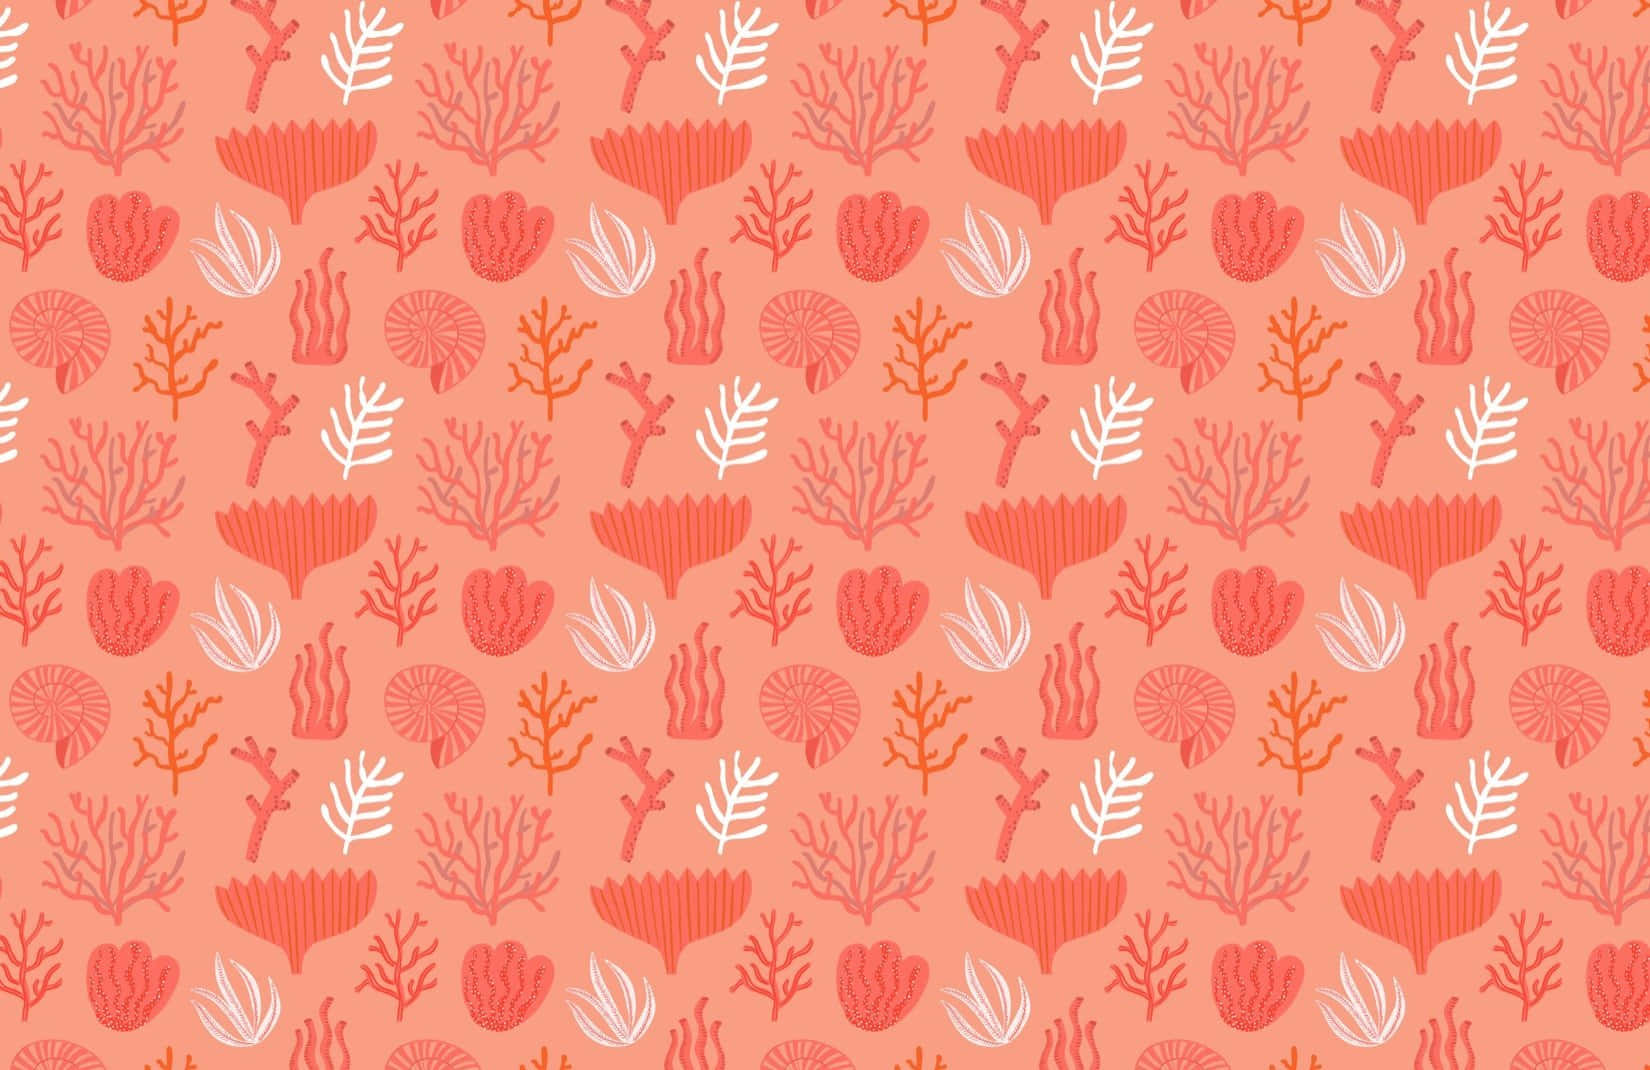 Stoffaa Pattern Corallo E Bianco Di Sarah_sass Su Spoonflower - Tessuto Personalizzato